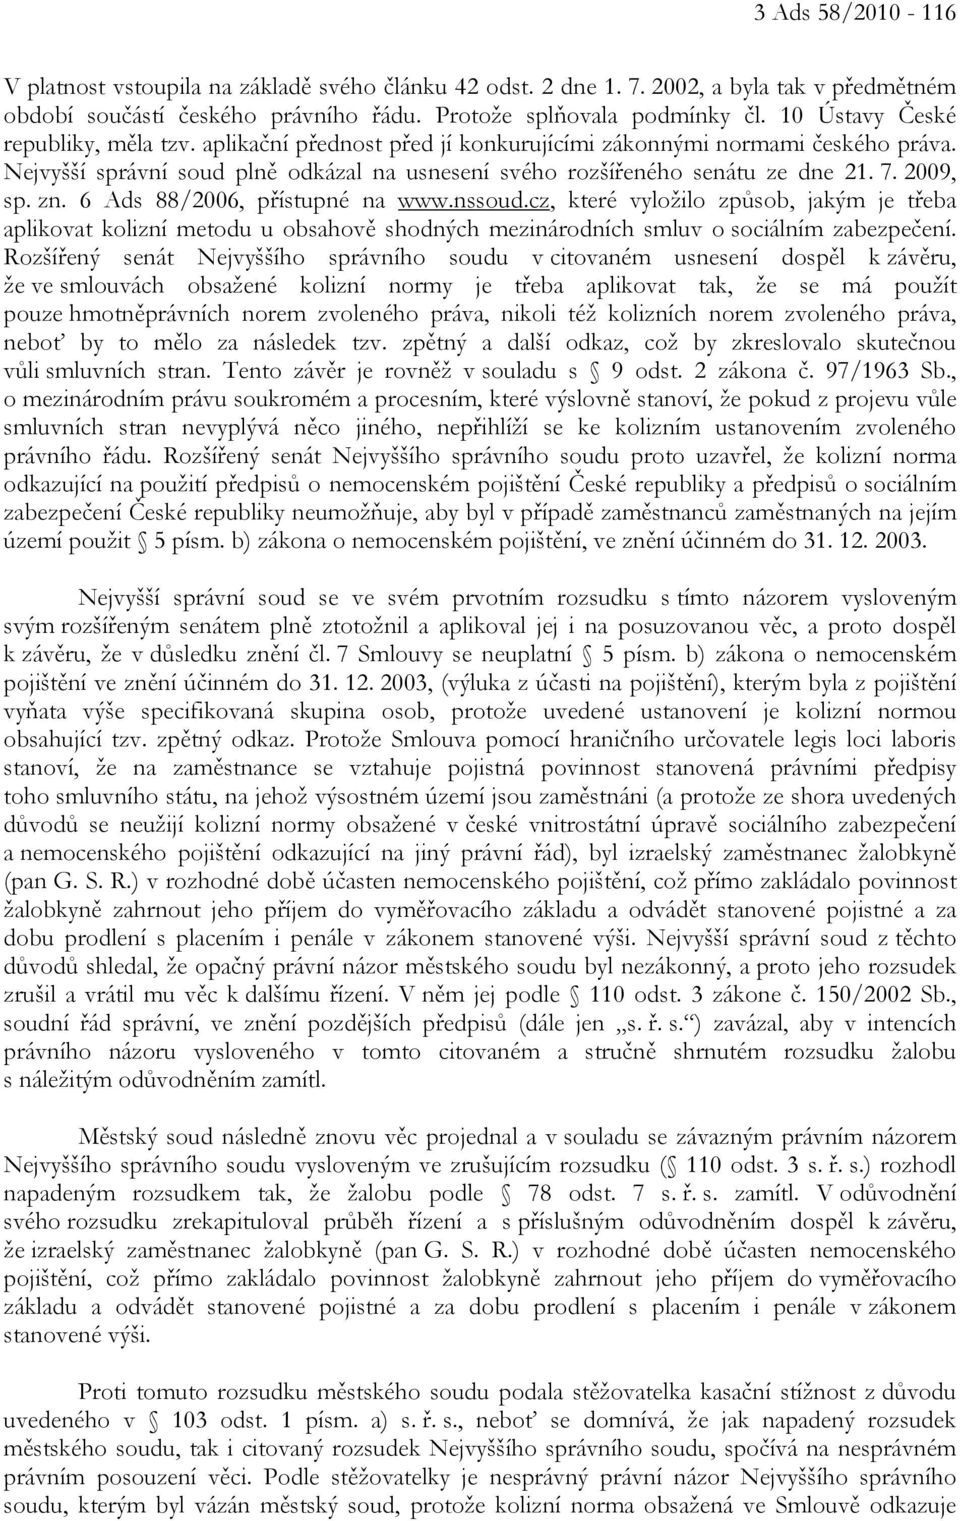 2009, sp. zn. 6 Ads 88/2006, přístupné na www.nssoud.cz, které vyložilo způsob, jakým je třeba aplikovat kolizní metodu u obsahově shodných mezinárodních smluv o sociálním zabezpečení.